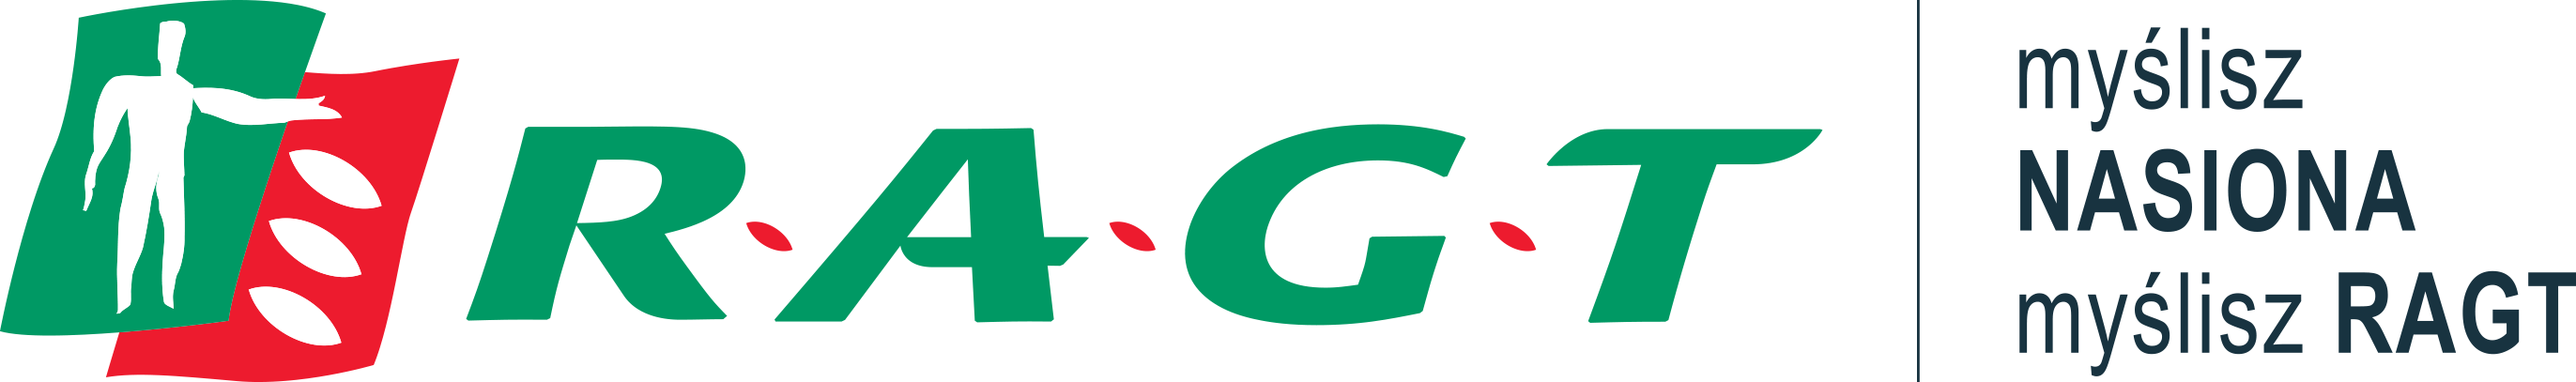 rtg logo